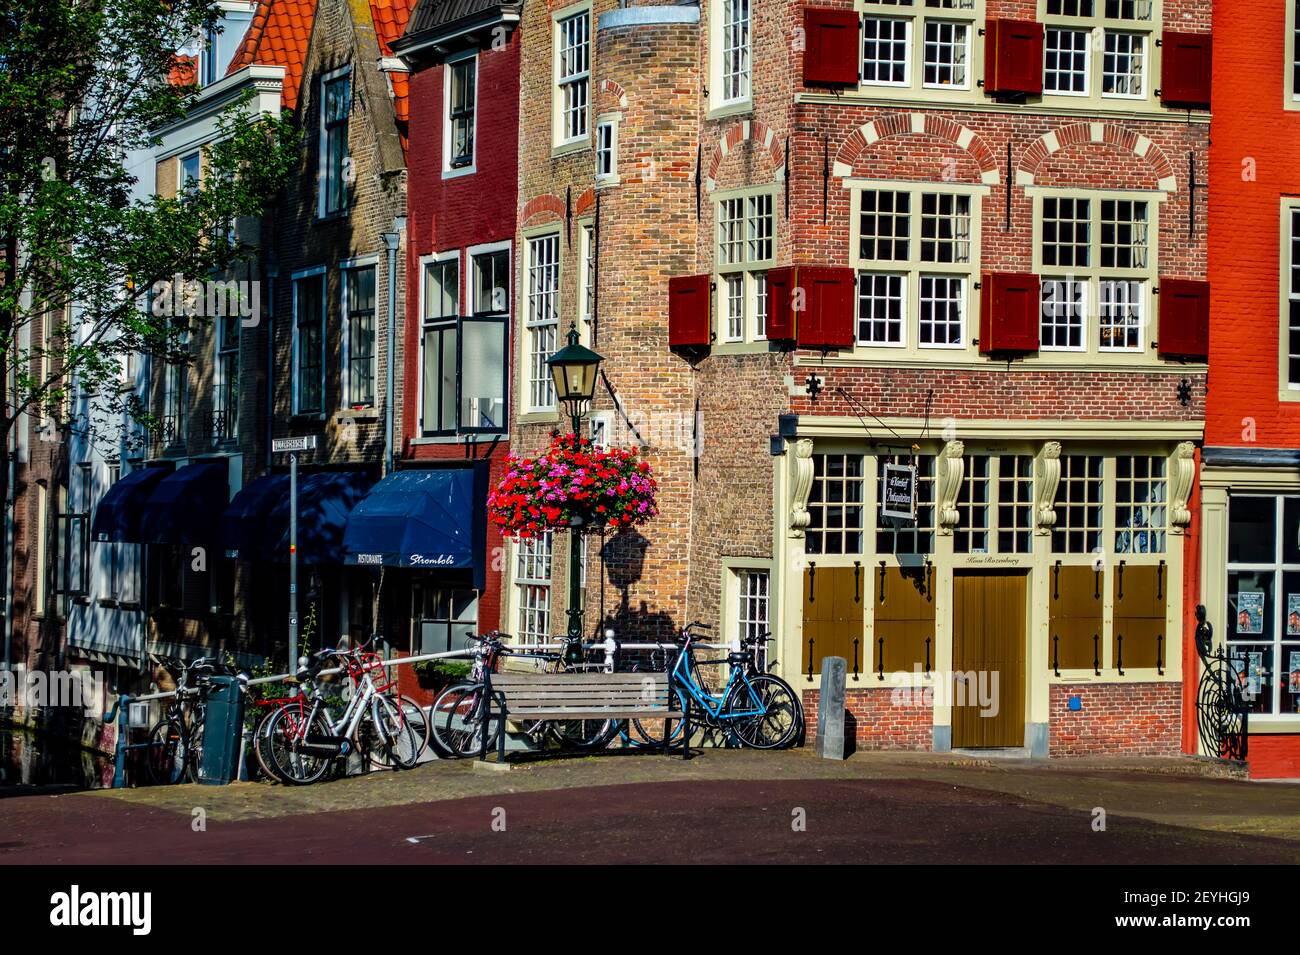 Delft, países Bajos - 11 de julio de 2019: Arquitectura típica holandesa en la ciudad de Delft, países Bajos Foto de stock